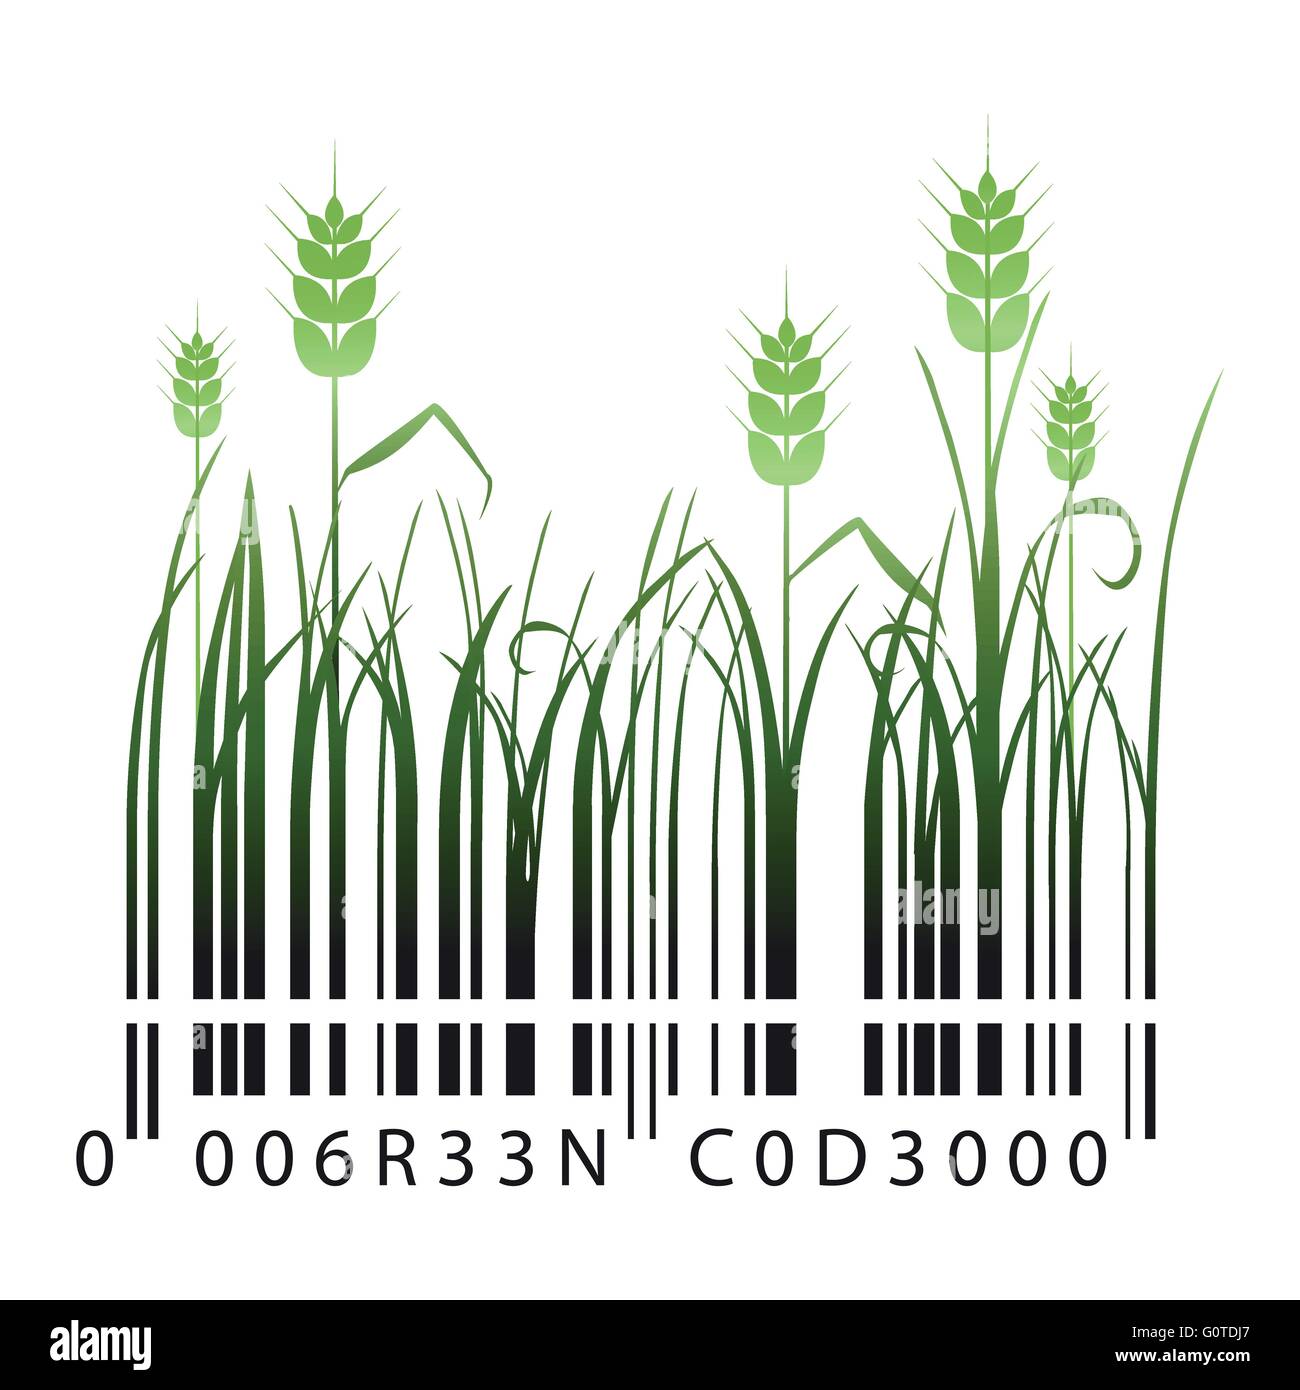 Codice a barre verdi con lame di erba e spighe di grano Illustrazione Vettoriale